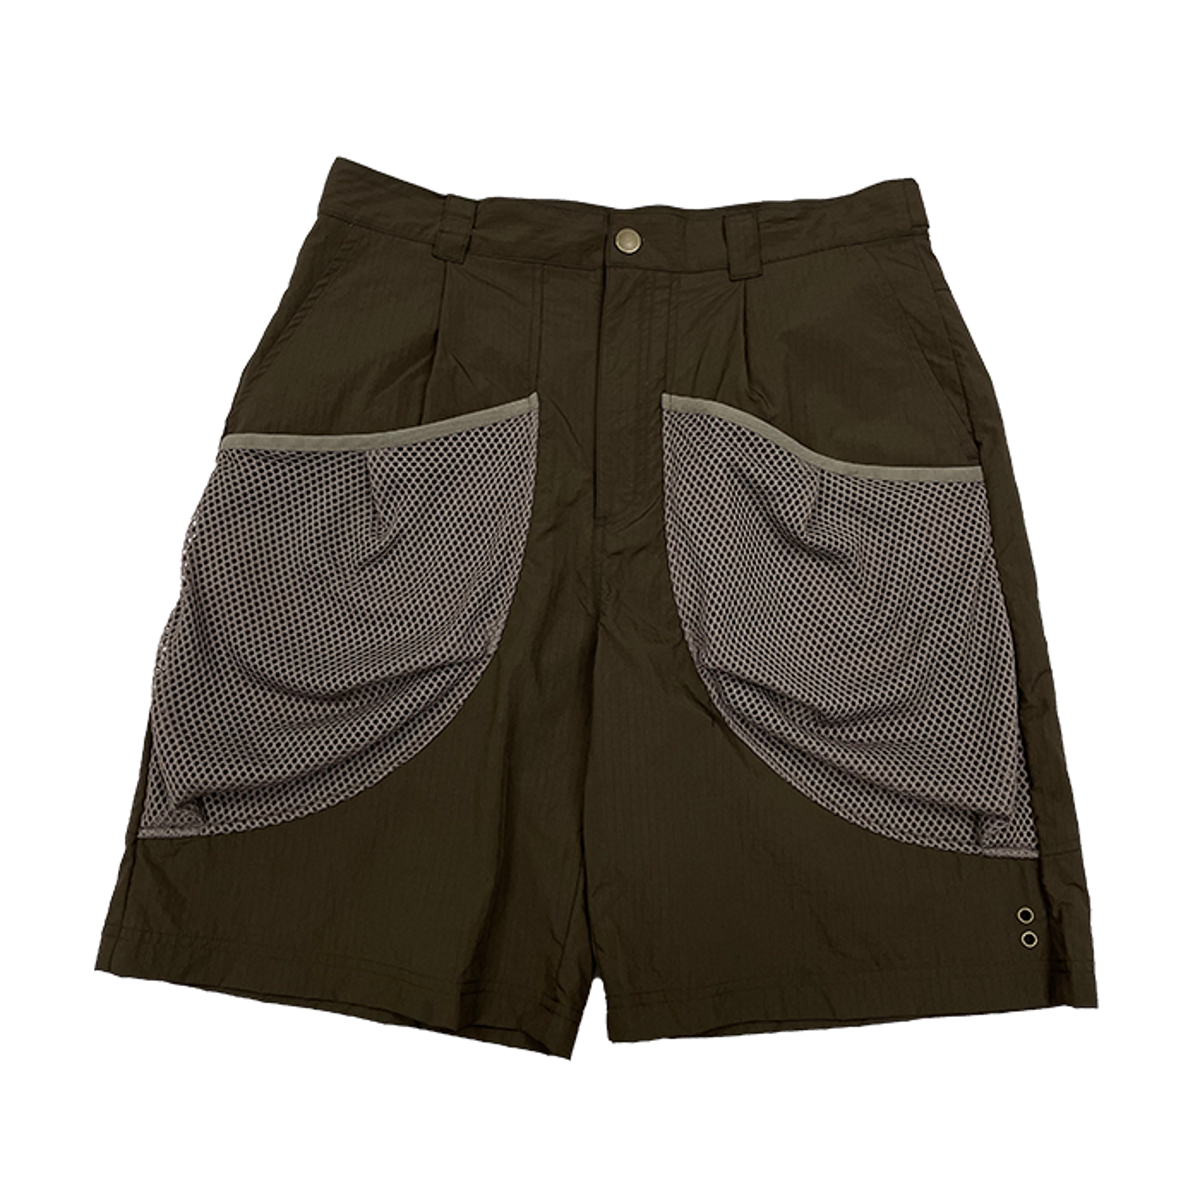 TCM volume nylon shorts pants (brown)